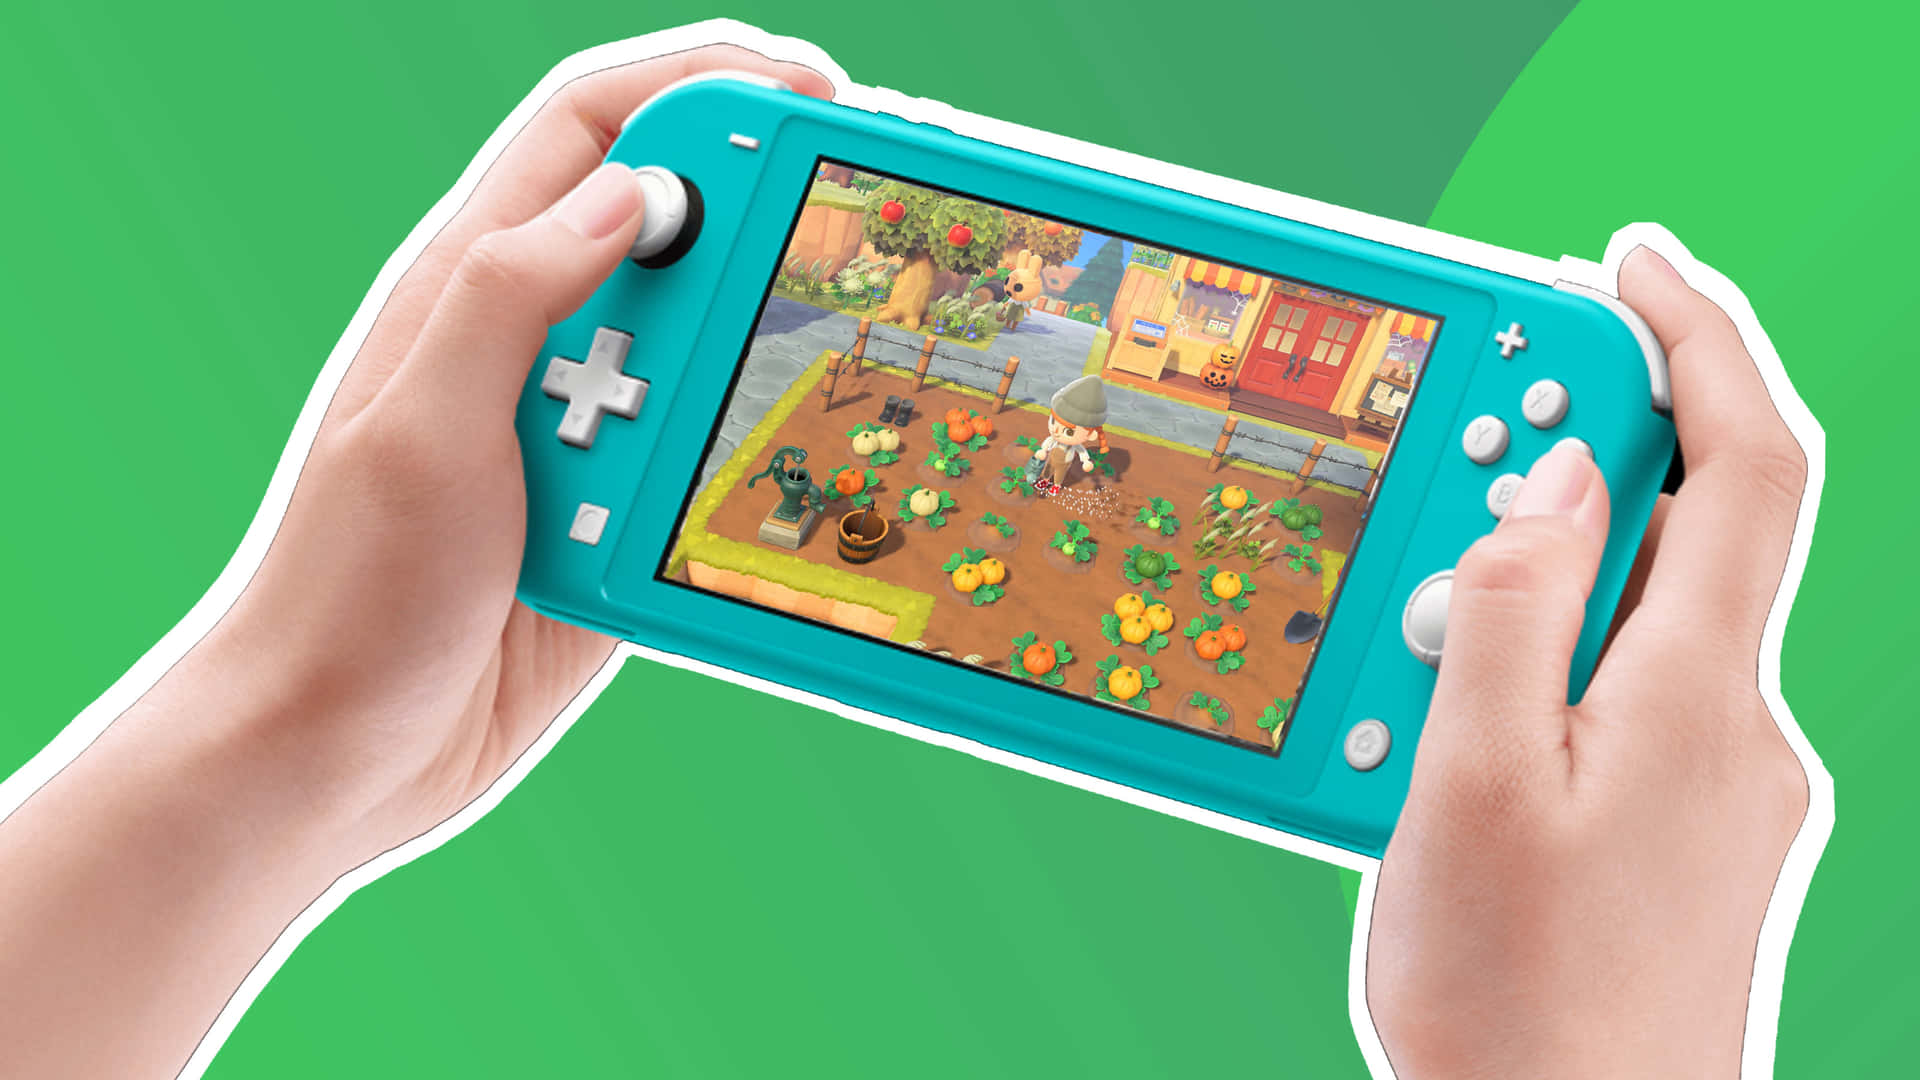 Elpoder De Jugar A Tu Manera: El Nintendo Switch Ofrece Infinitas Opciones De Entretenimiento.